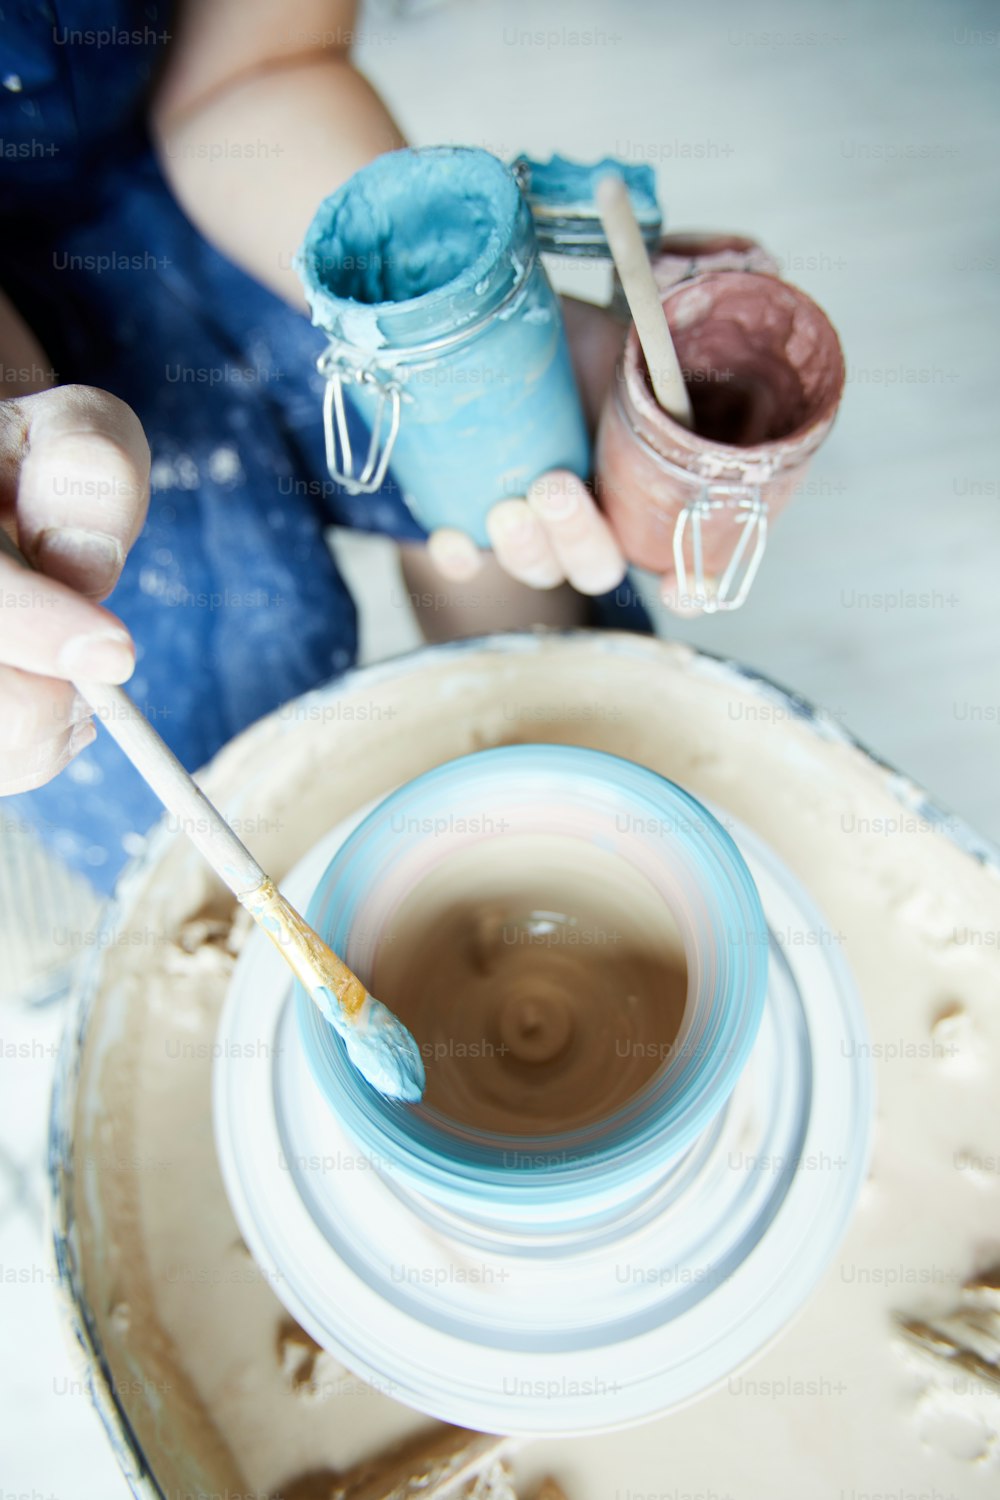 Pennello con colore blu in mano del vasaio creativo sopra la brocca rotante nella ruota di ceramica